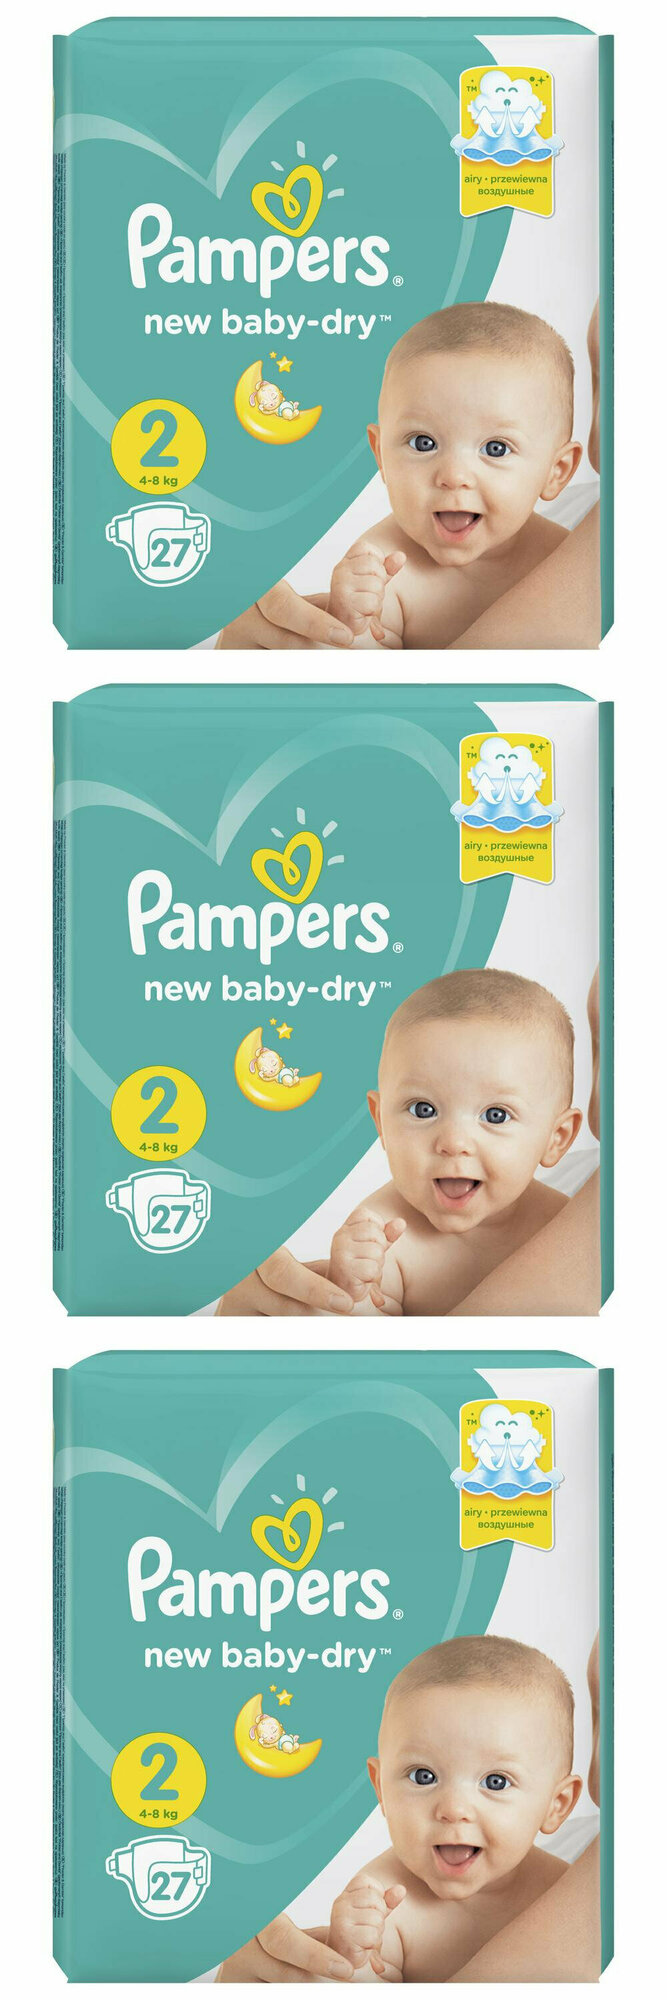 Pampers Подгузники детские New Baby-Dry для новорожденных 4-8 кг, 2 размер, 27 шт, 3 упаковки